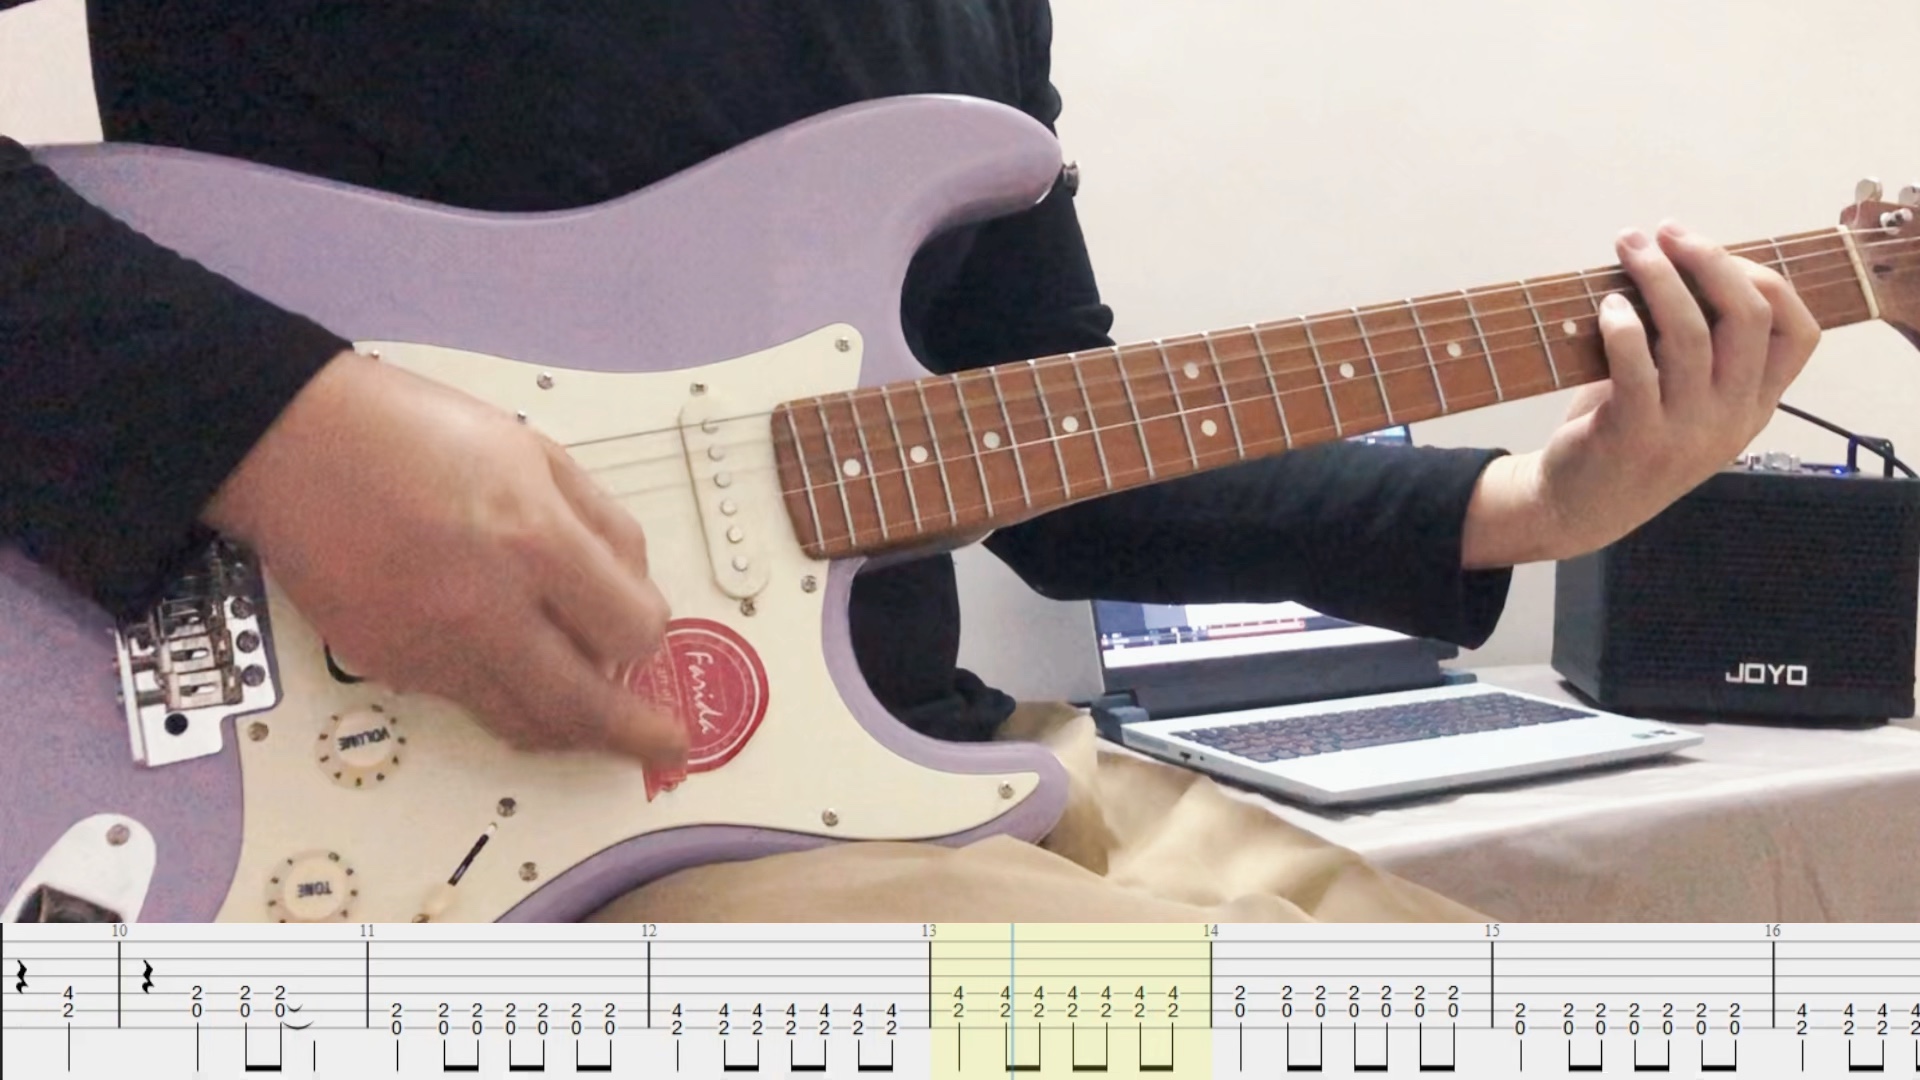 【附谱】这是神奇的《赛尔号》电吉他前奏，下集出教学视频。演奏用琴：法丽达5020薰衣草紫+Joyo Dc15s 音箱 #电吉他 #电吉他教学 #吉他